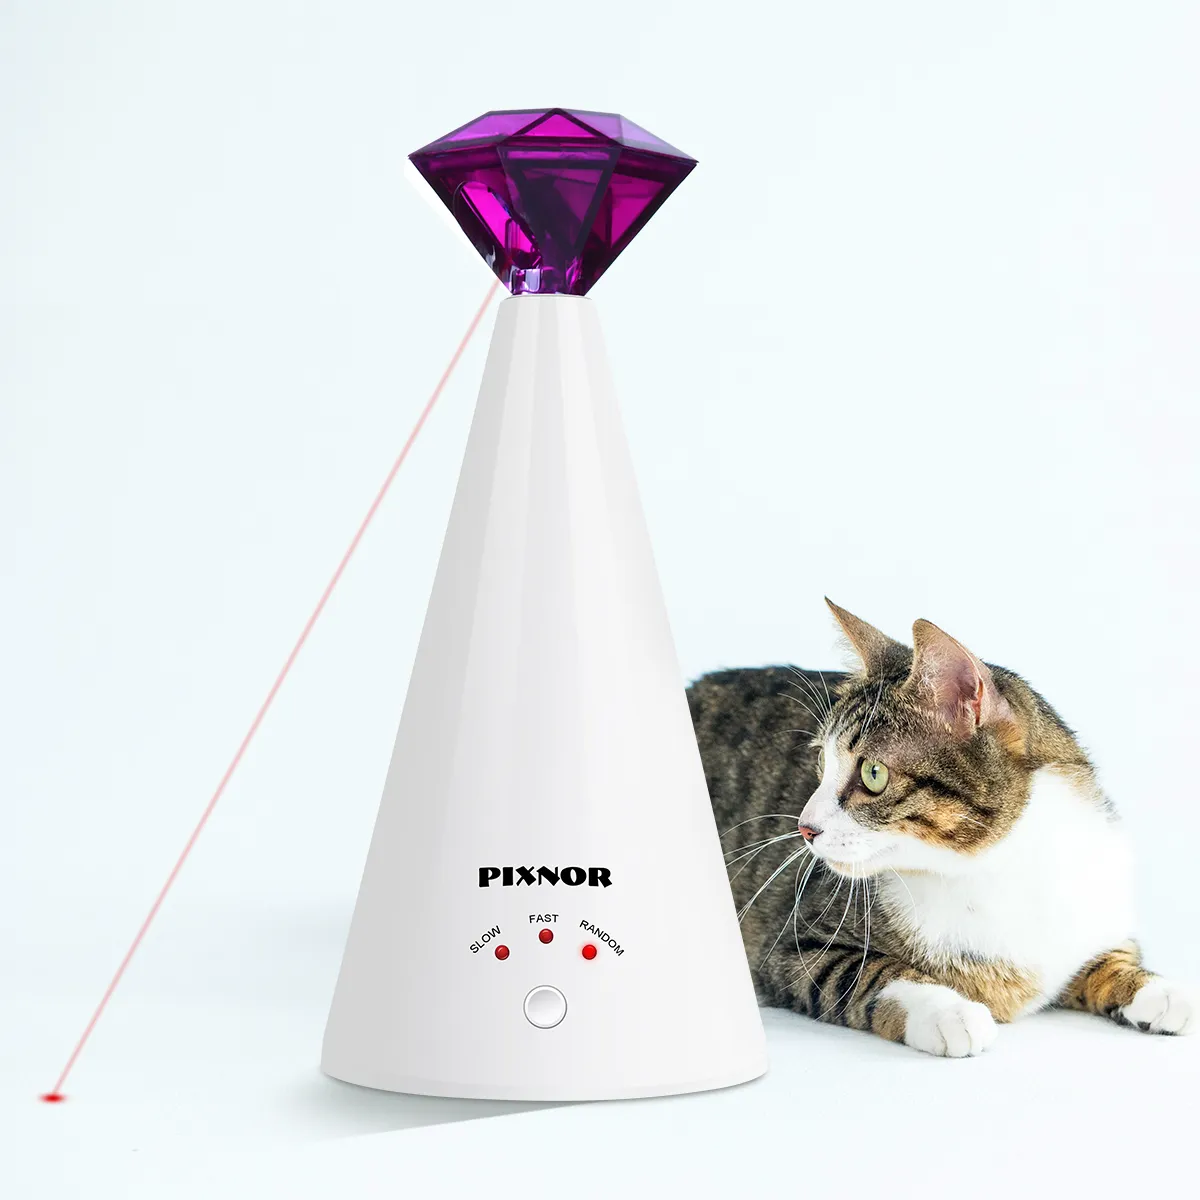 Pixnor Smart Laser Tailasing Dispositif électrique Toy Home Interactive Cat Réglable 3 VIXEURS PEAU POINTER PURPLE 2011121102376